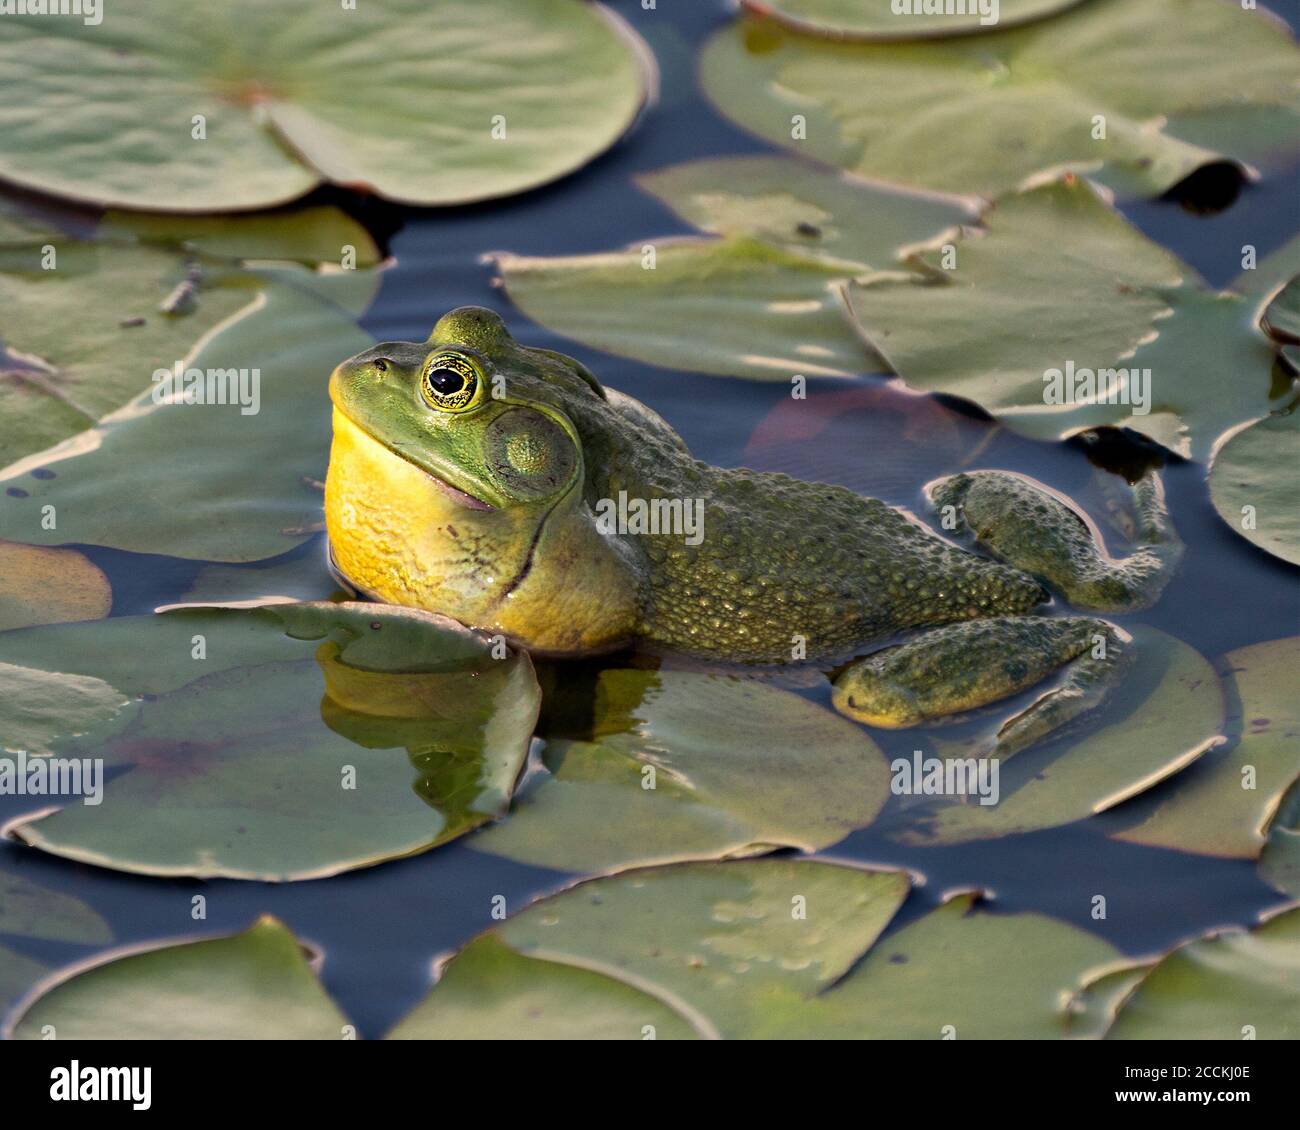 Frosch auf einer Seerose im Wasser sitzend, zeigt grünen Körper, Kopf, Beine, Auge in seiner Umgebung und Lebensraum, Blick auf die linke Seite. Stockfoto